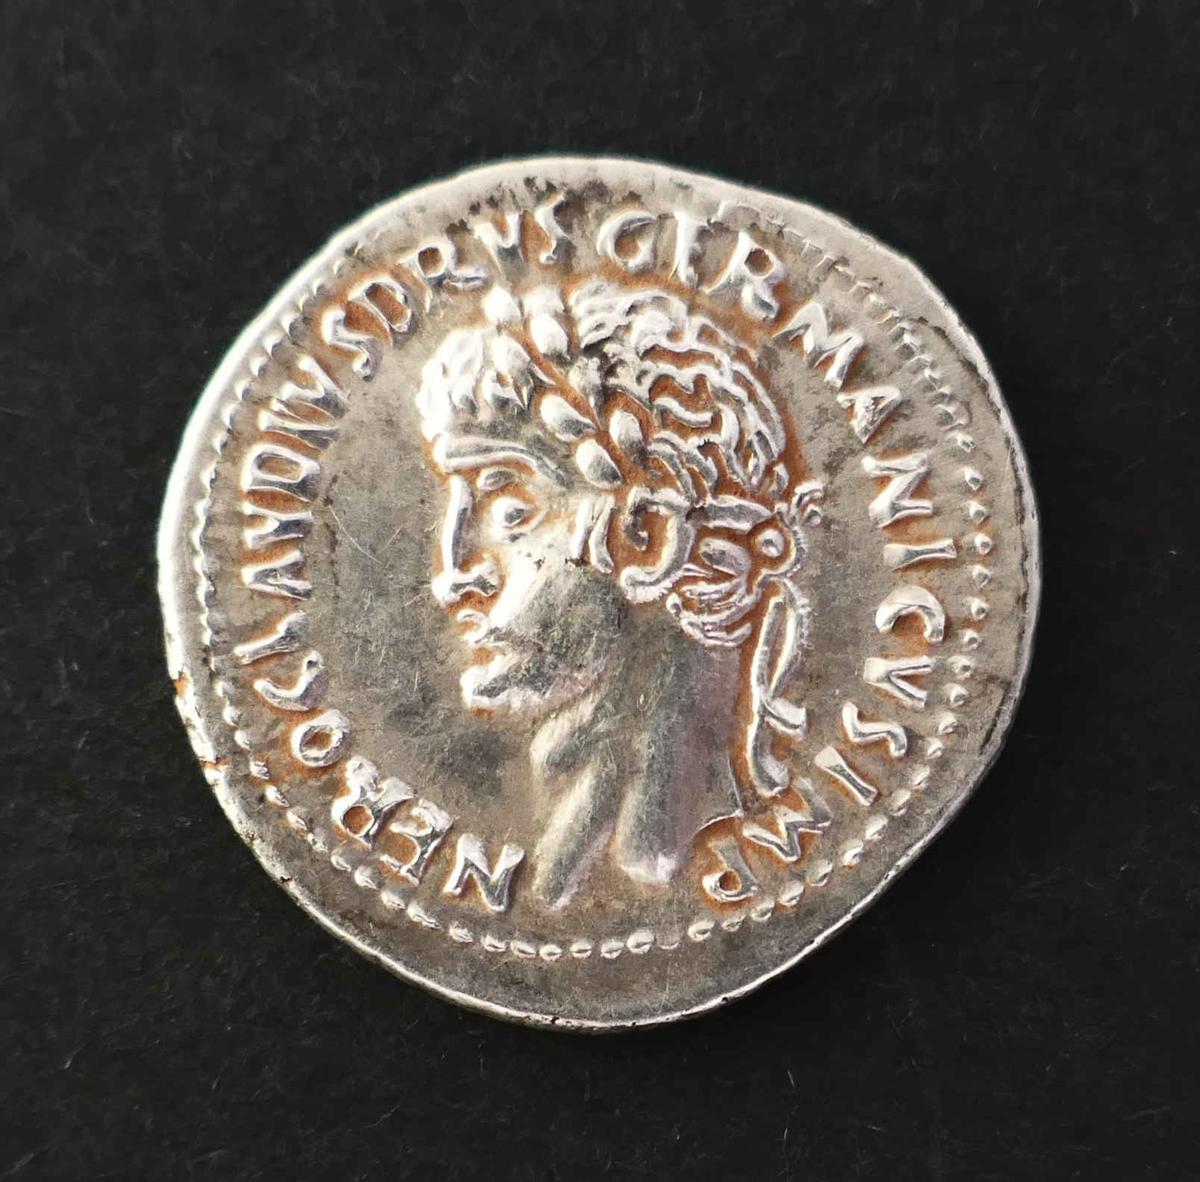 Moneda romana de época altoimperial, con Nerón Claudio Druso Germánico.